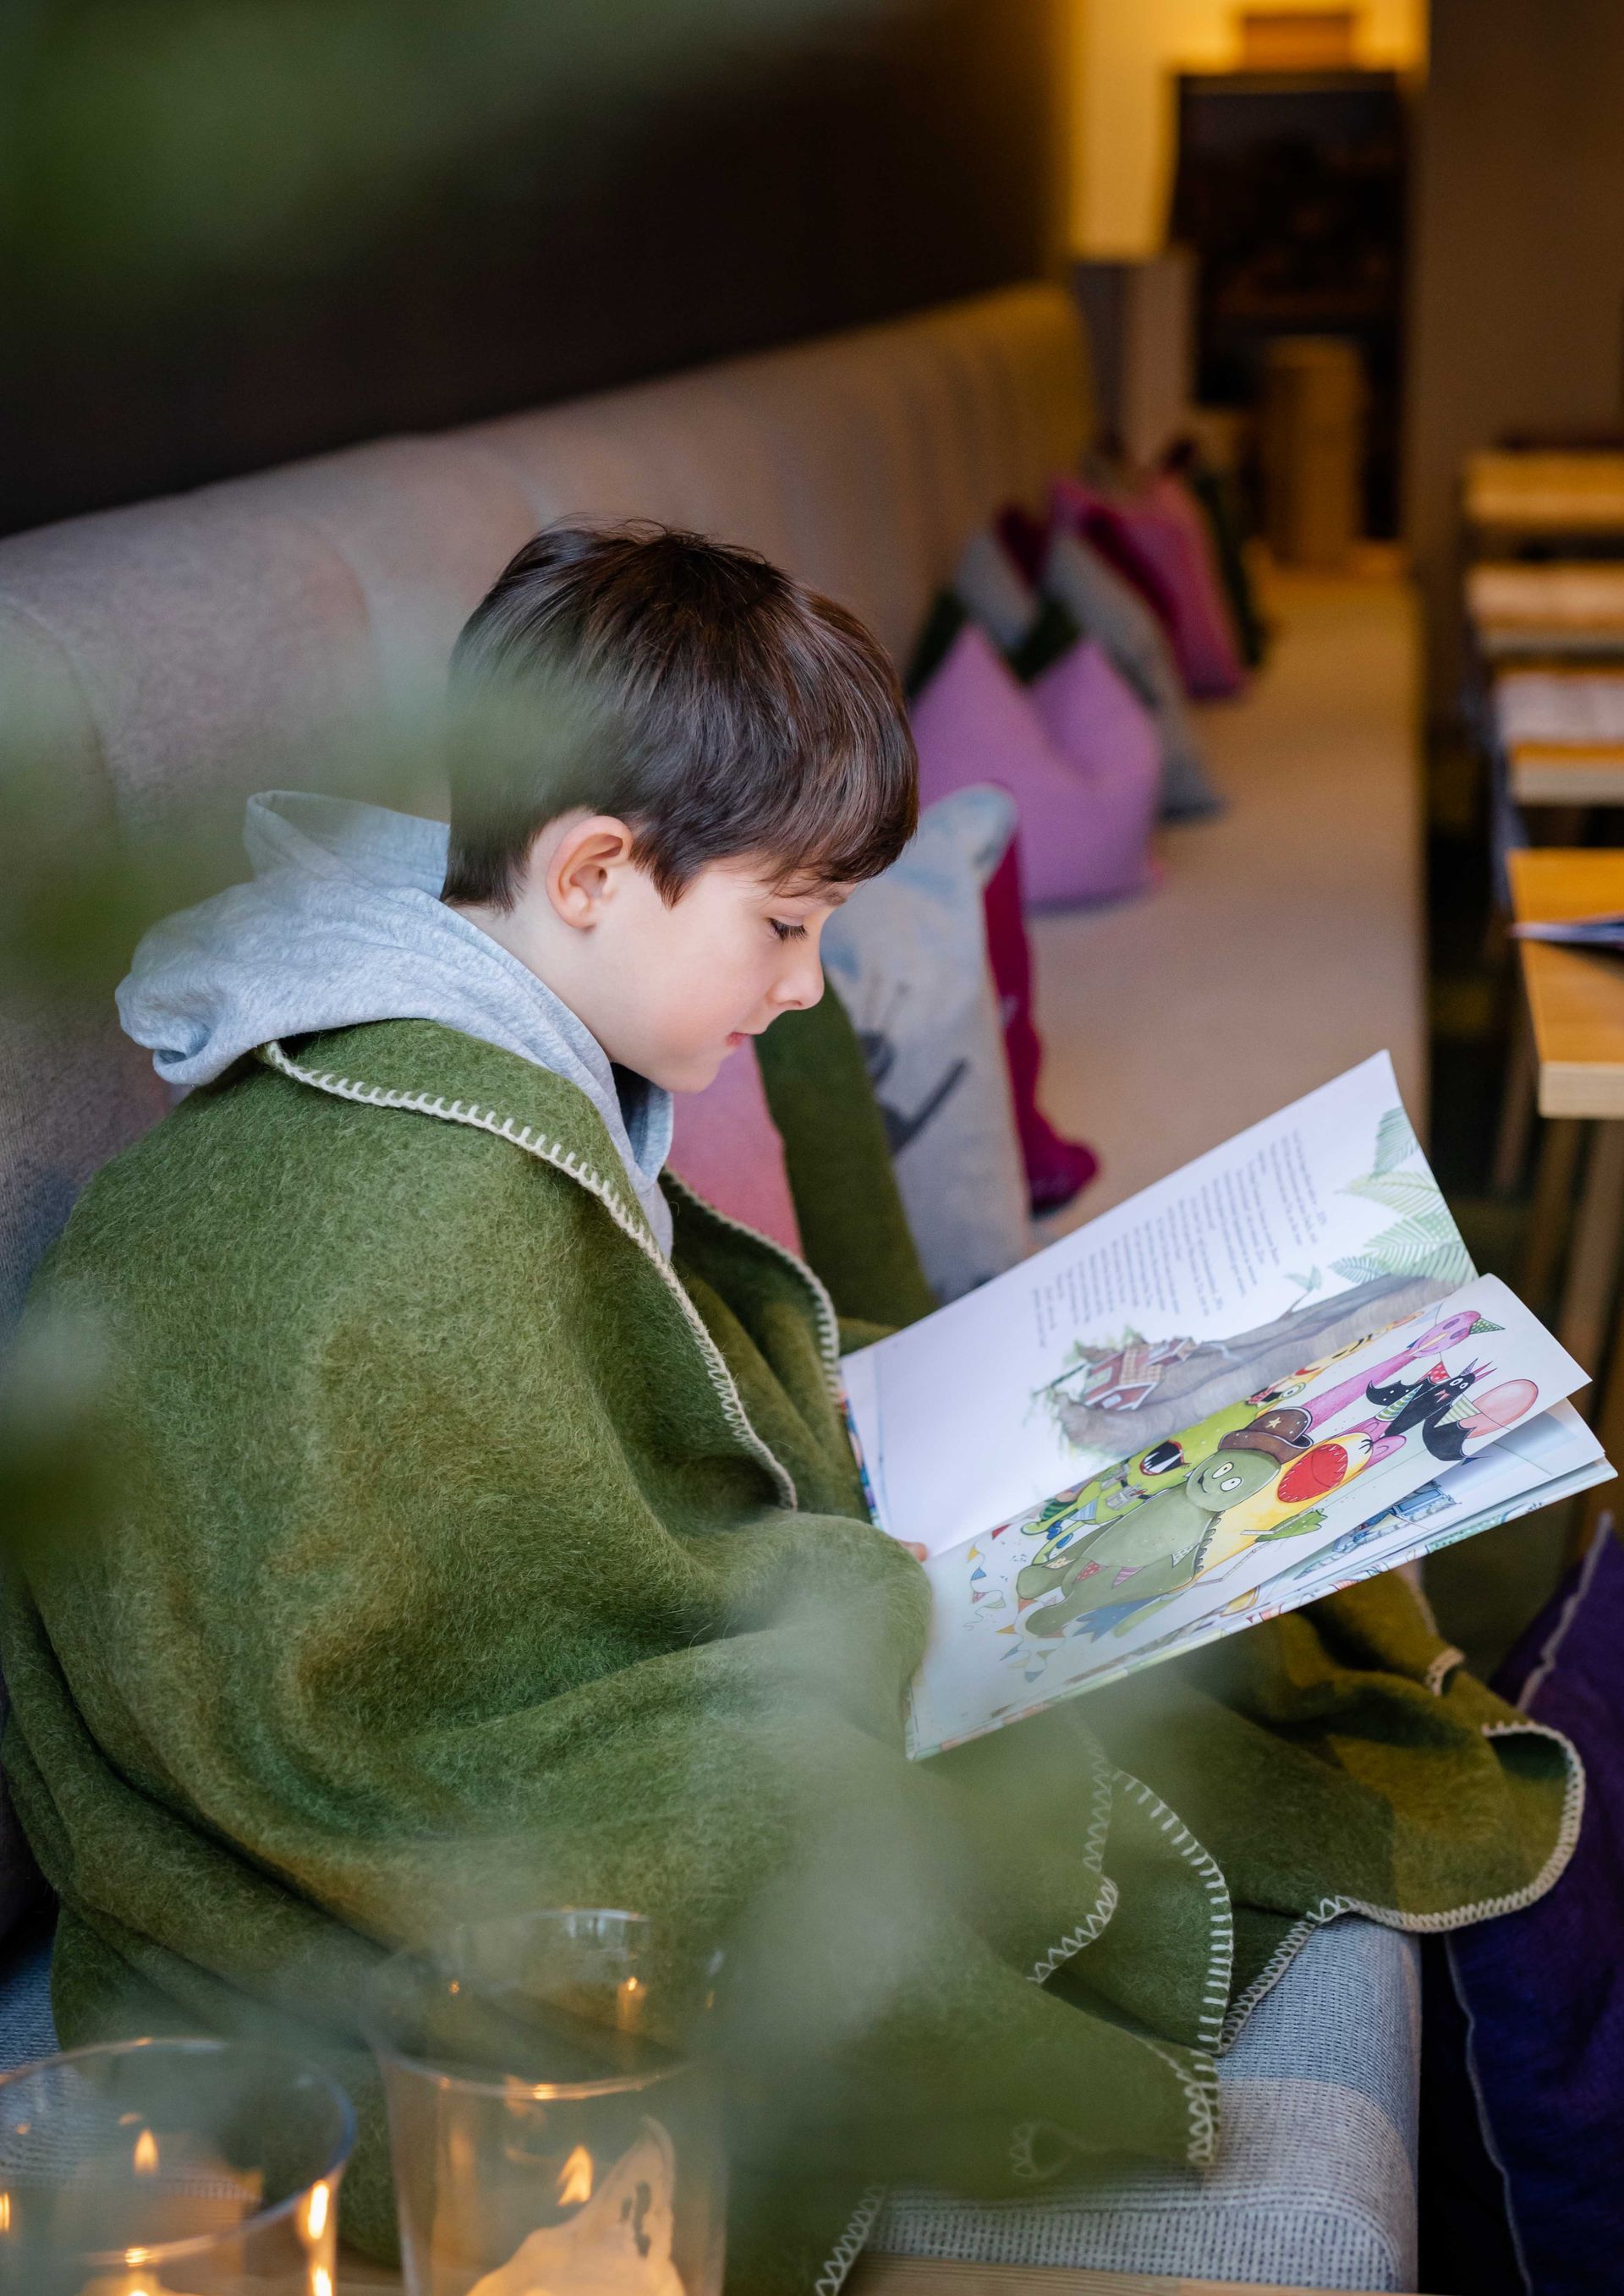 Ein Junge , der mit einer grünen Decke bedeckt ist , sitzt auf einer Couch und liest ein Buch .